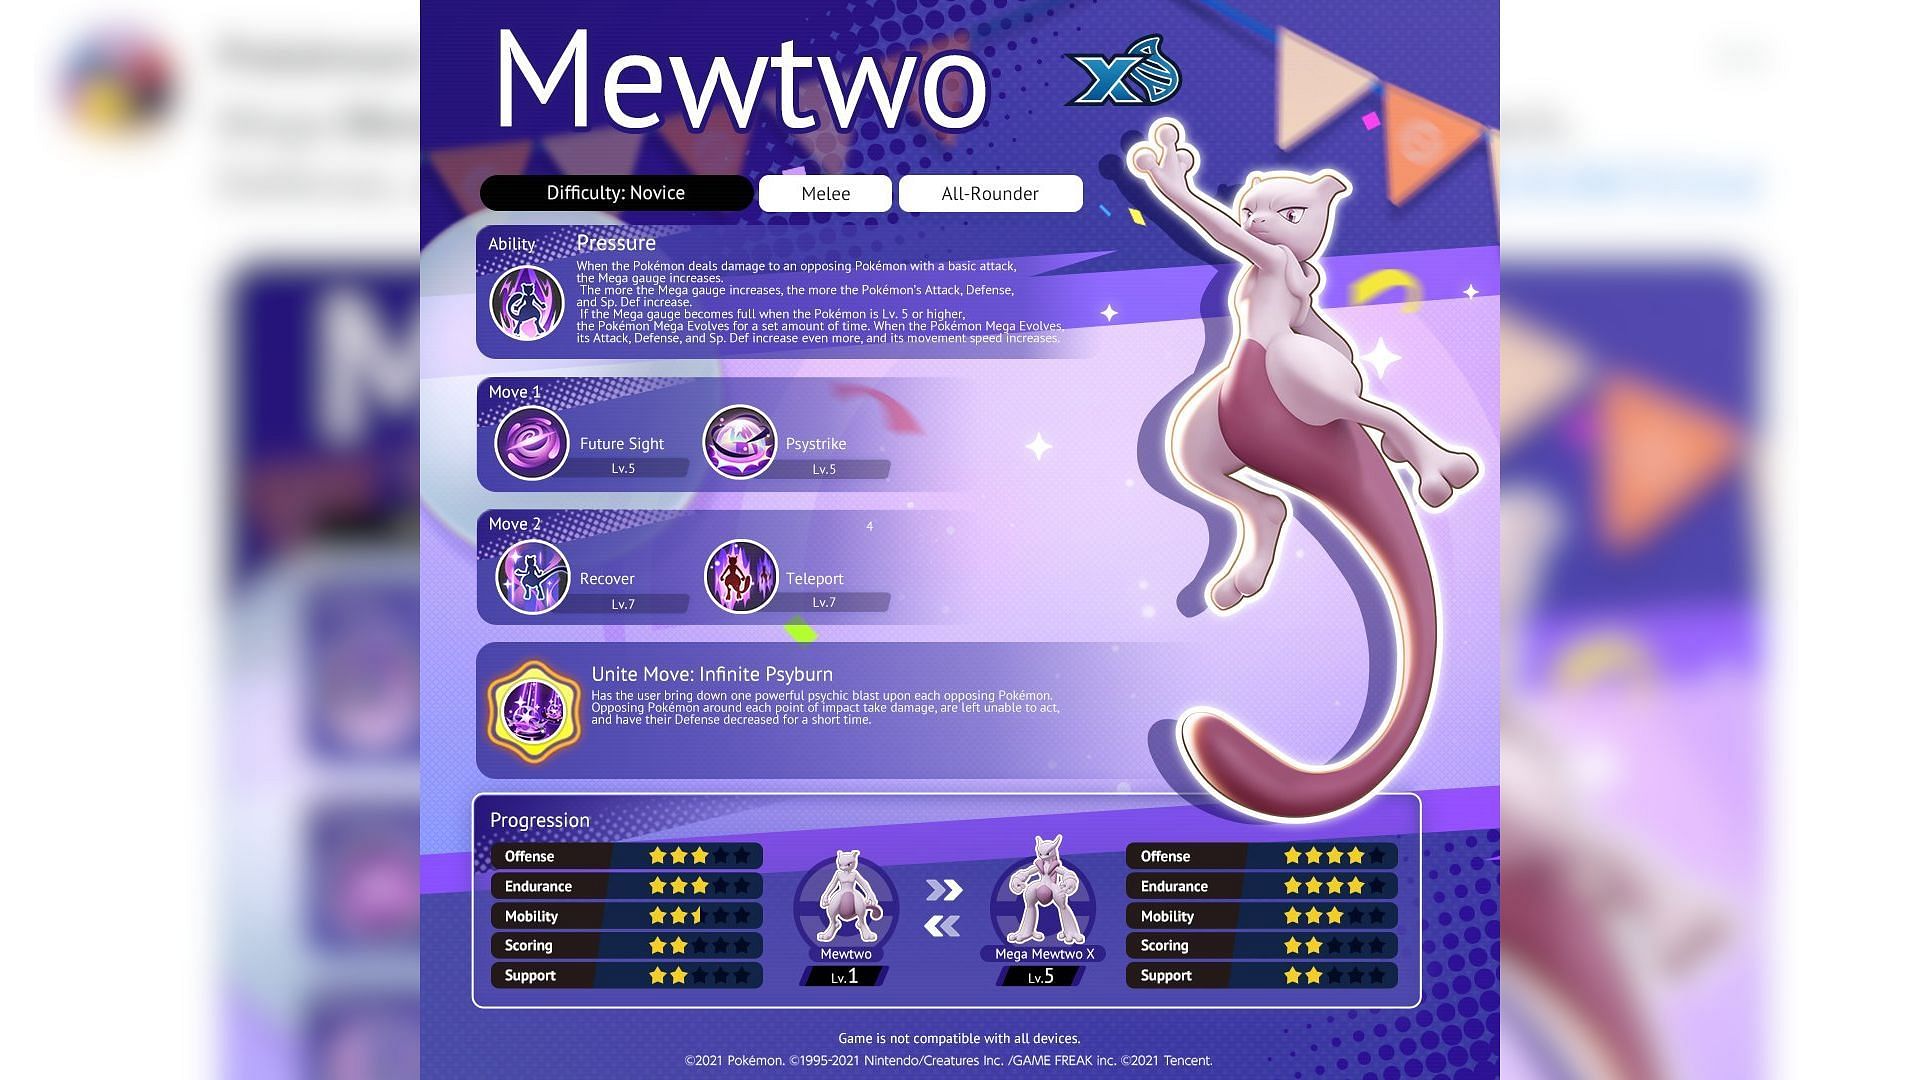 Mewtwo X moveset in Pokemon Unite (Image via Pokemon UNITE)